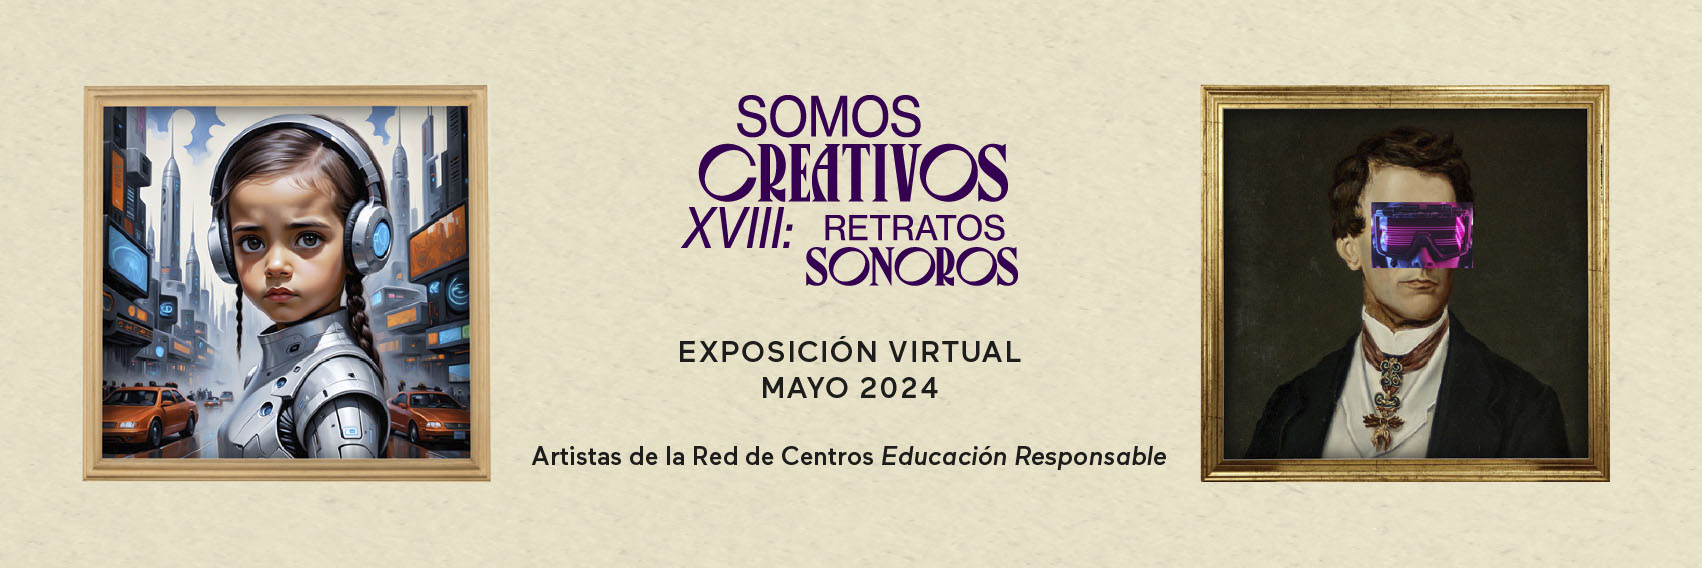 expo virtual_Reflejarte24_cabecera 2